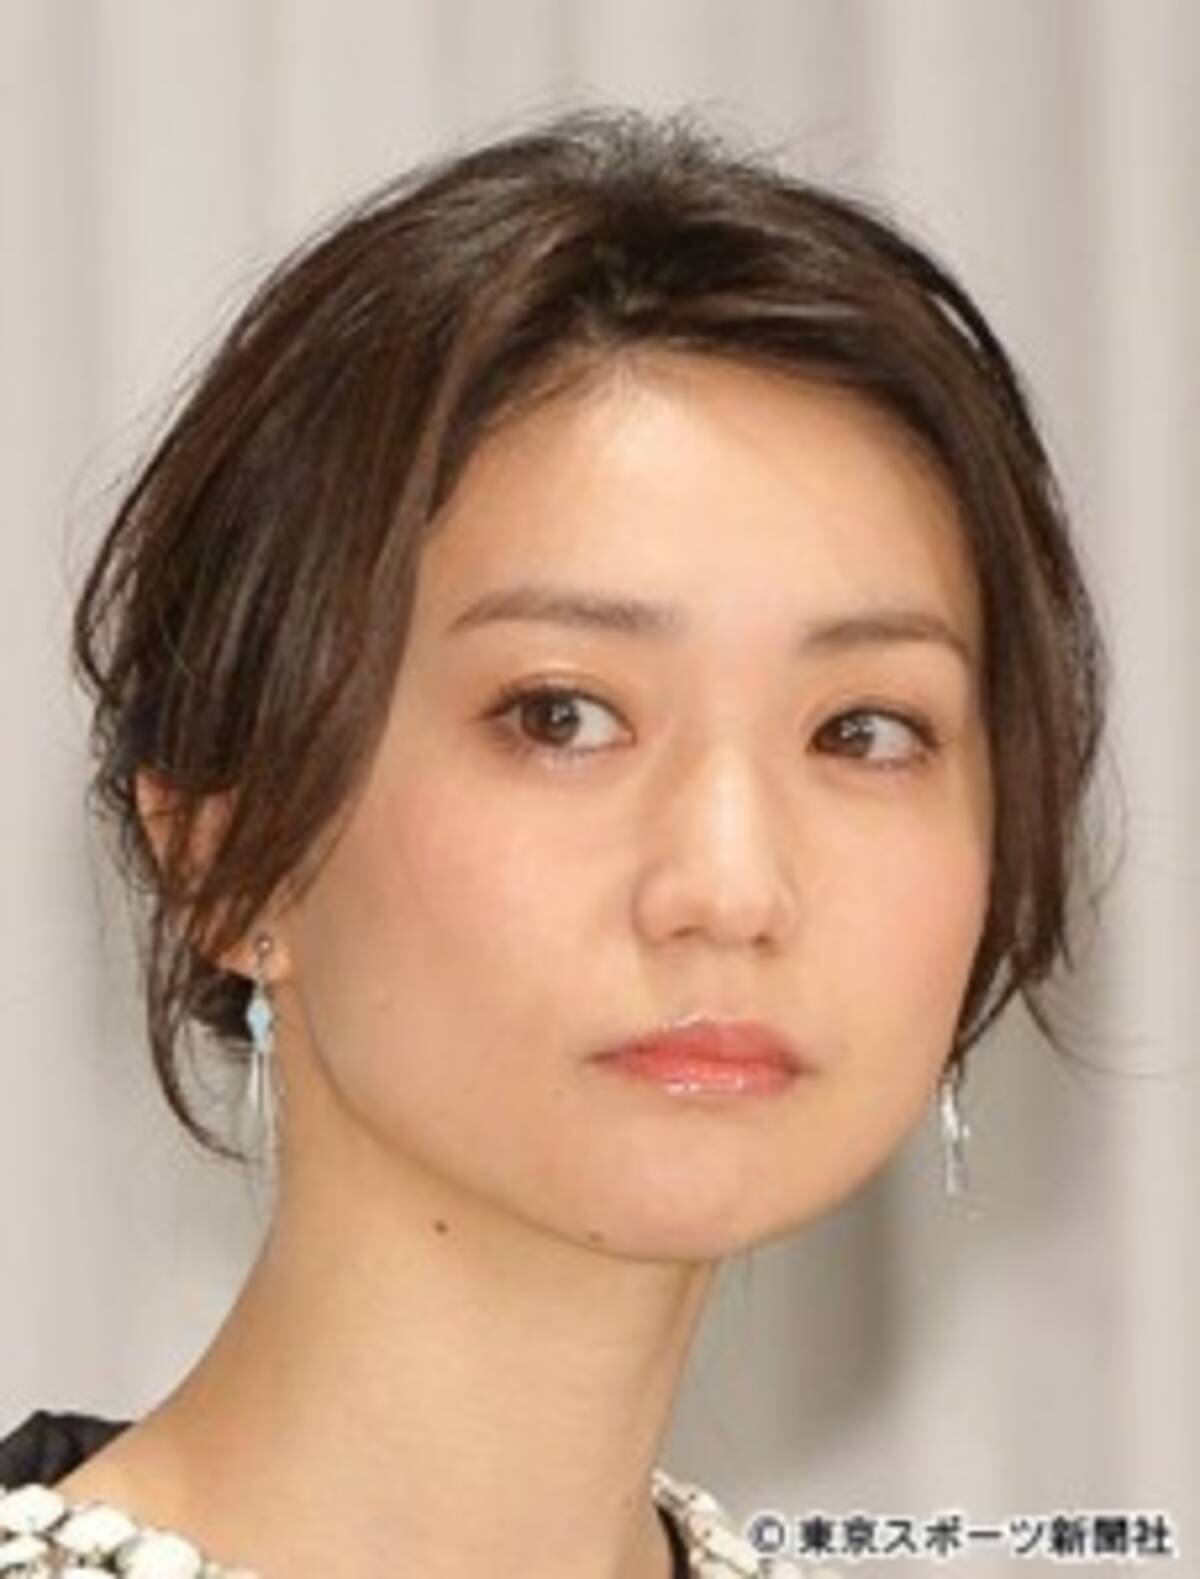 大島優子 ｆ文字帽子を謝罪 不愉快な気持ちにさせってしまってごめんなさい 17年6月19日 エキサイトニュース